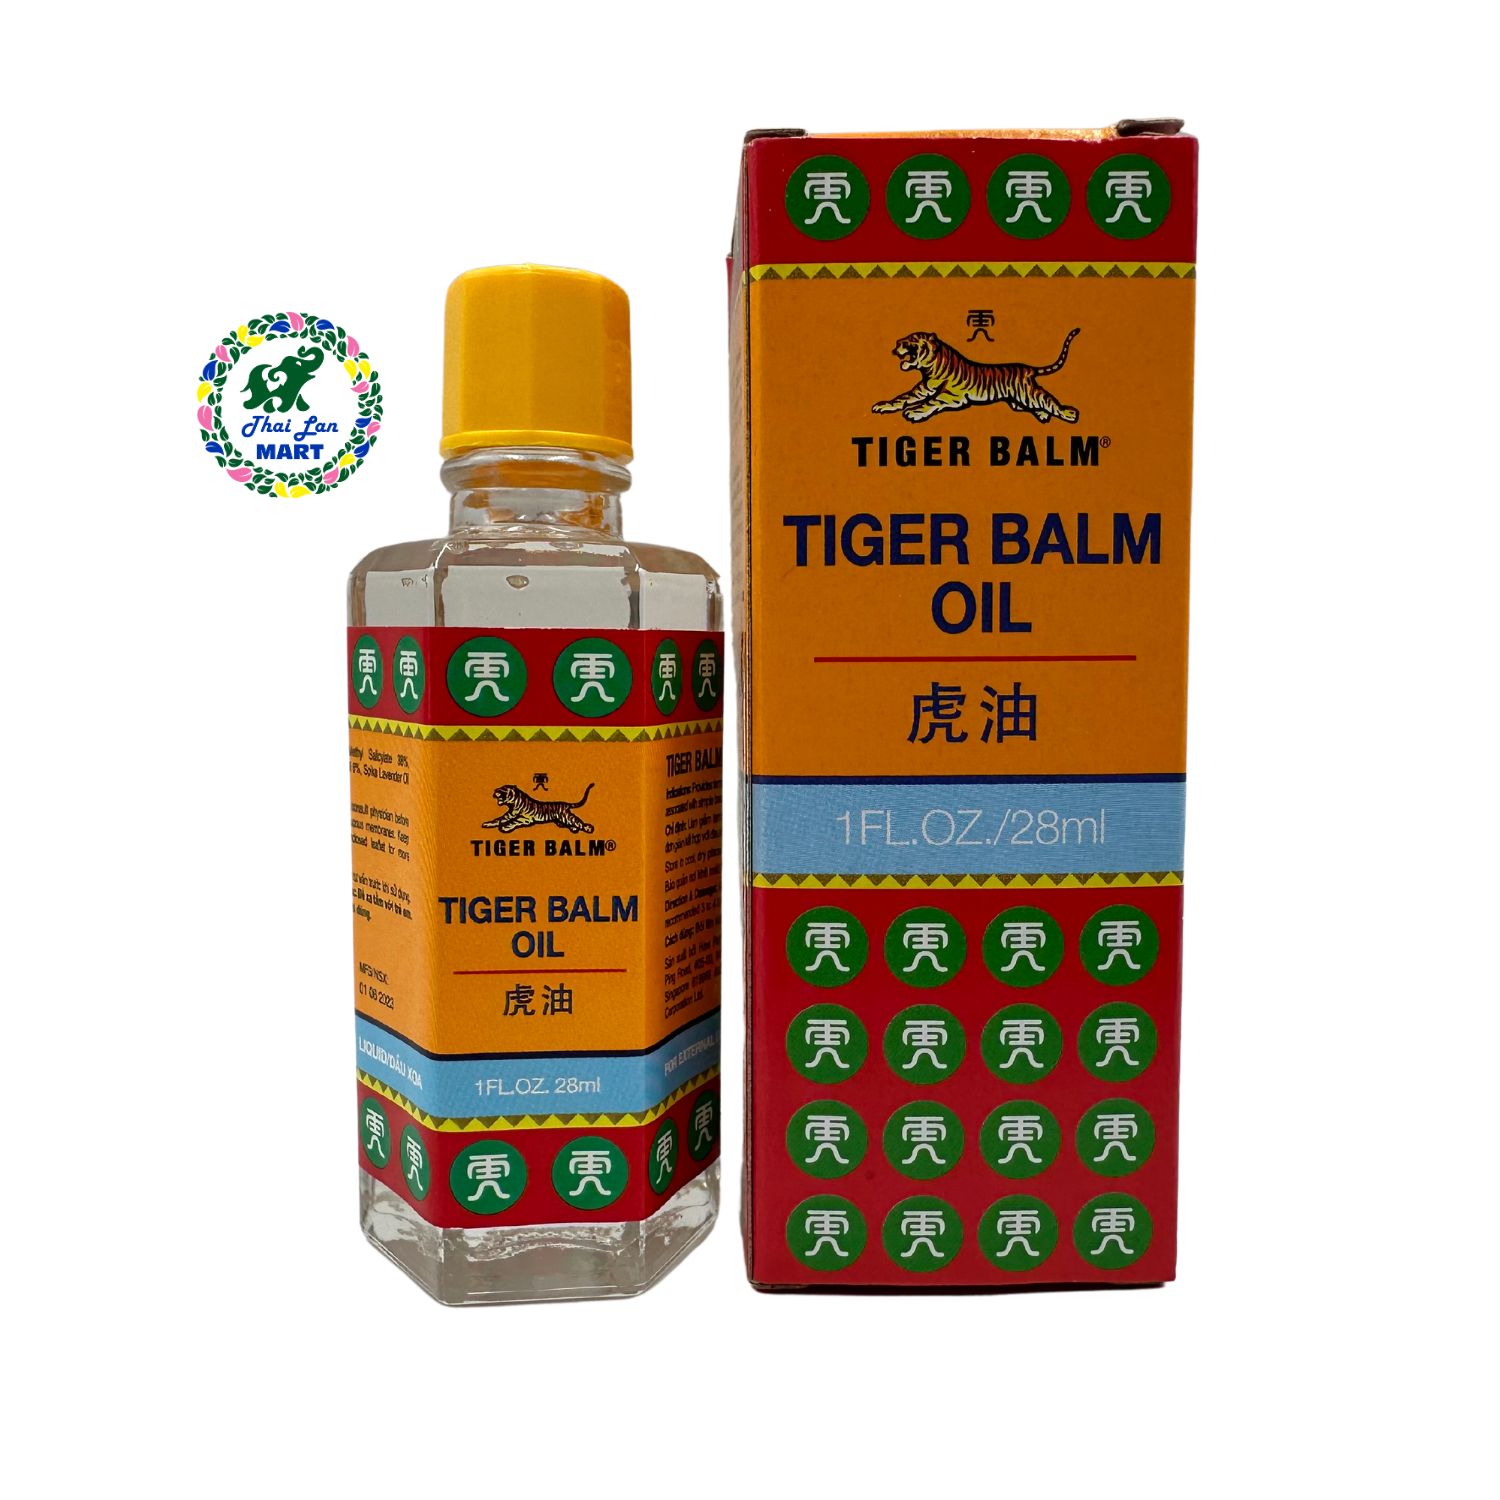 Dầu massage xoa bóp nhức mỏi tiger balm oil hàng nhập khẩu singapore